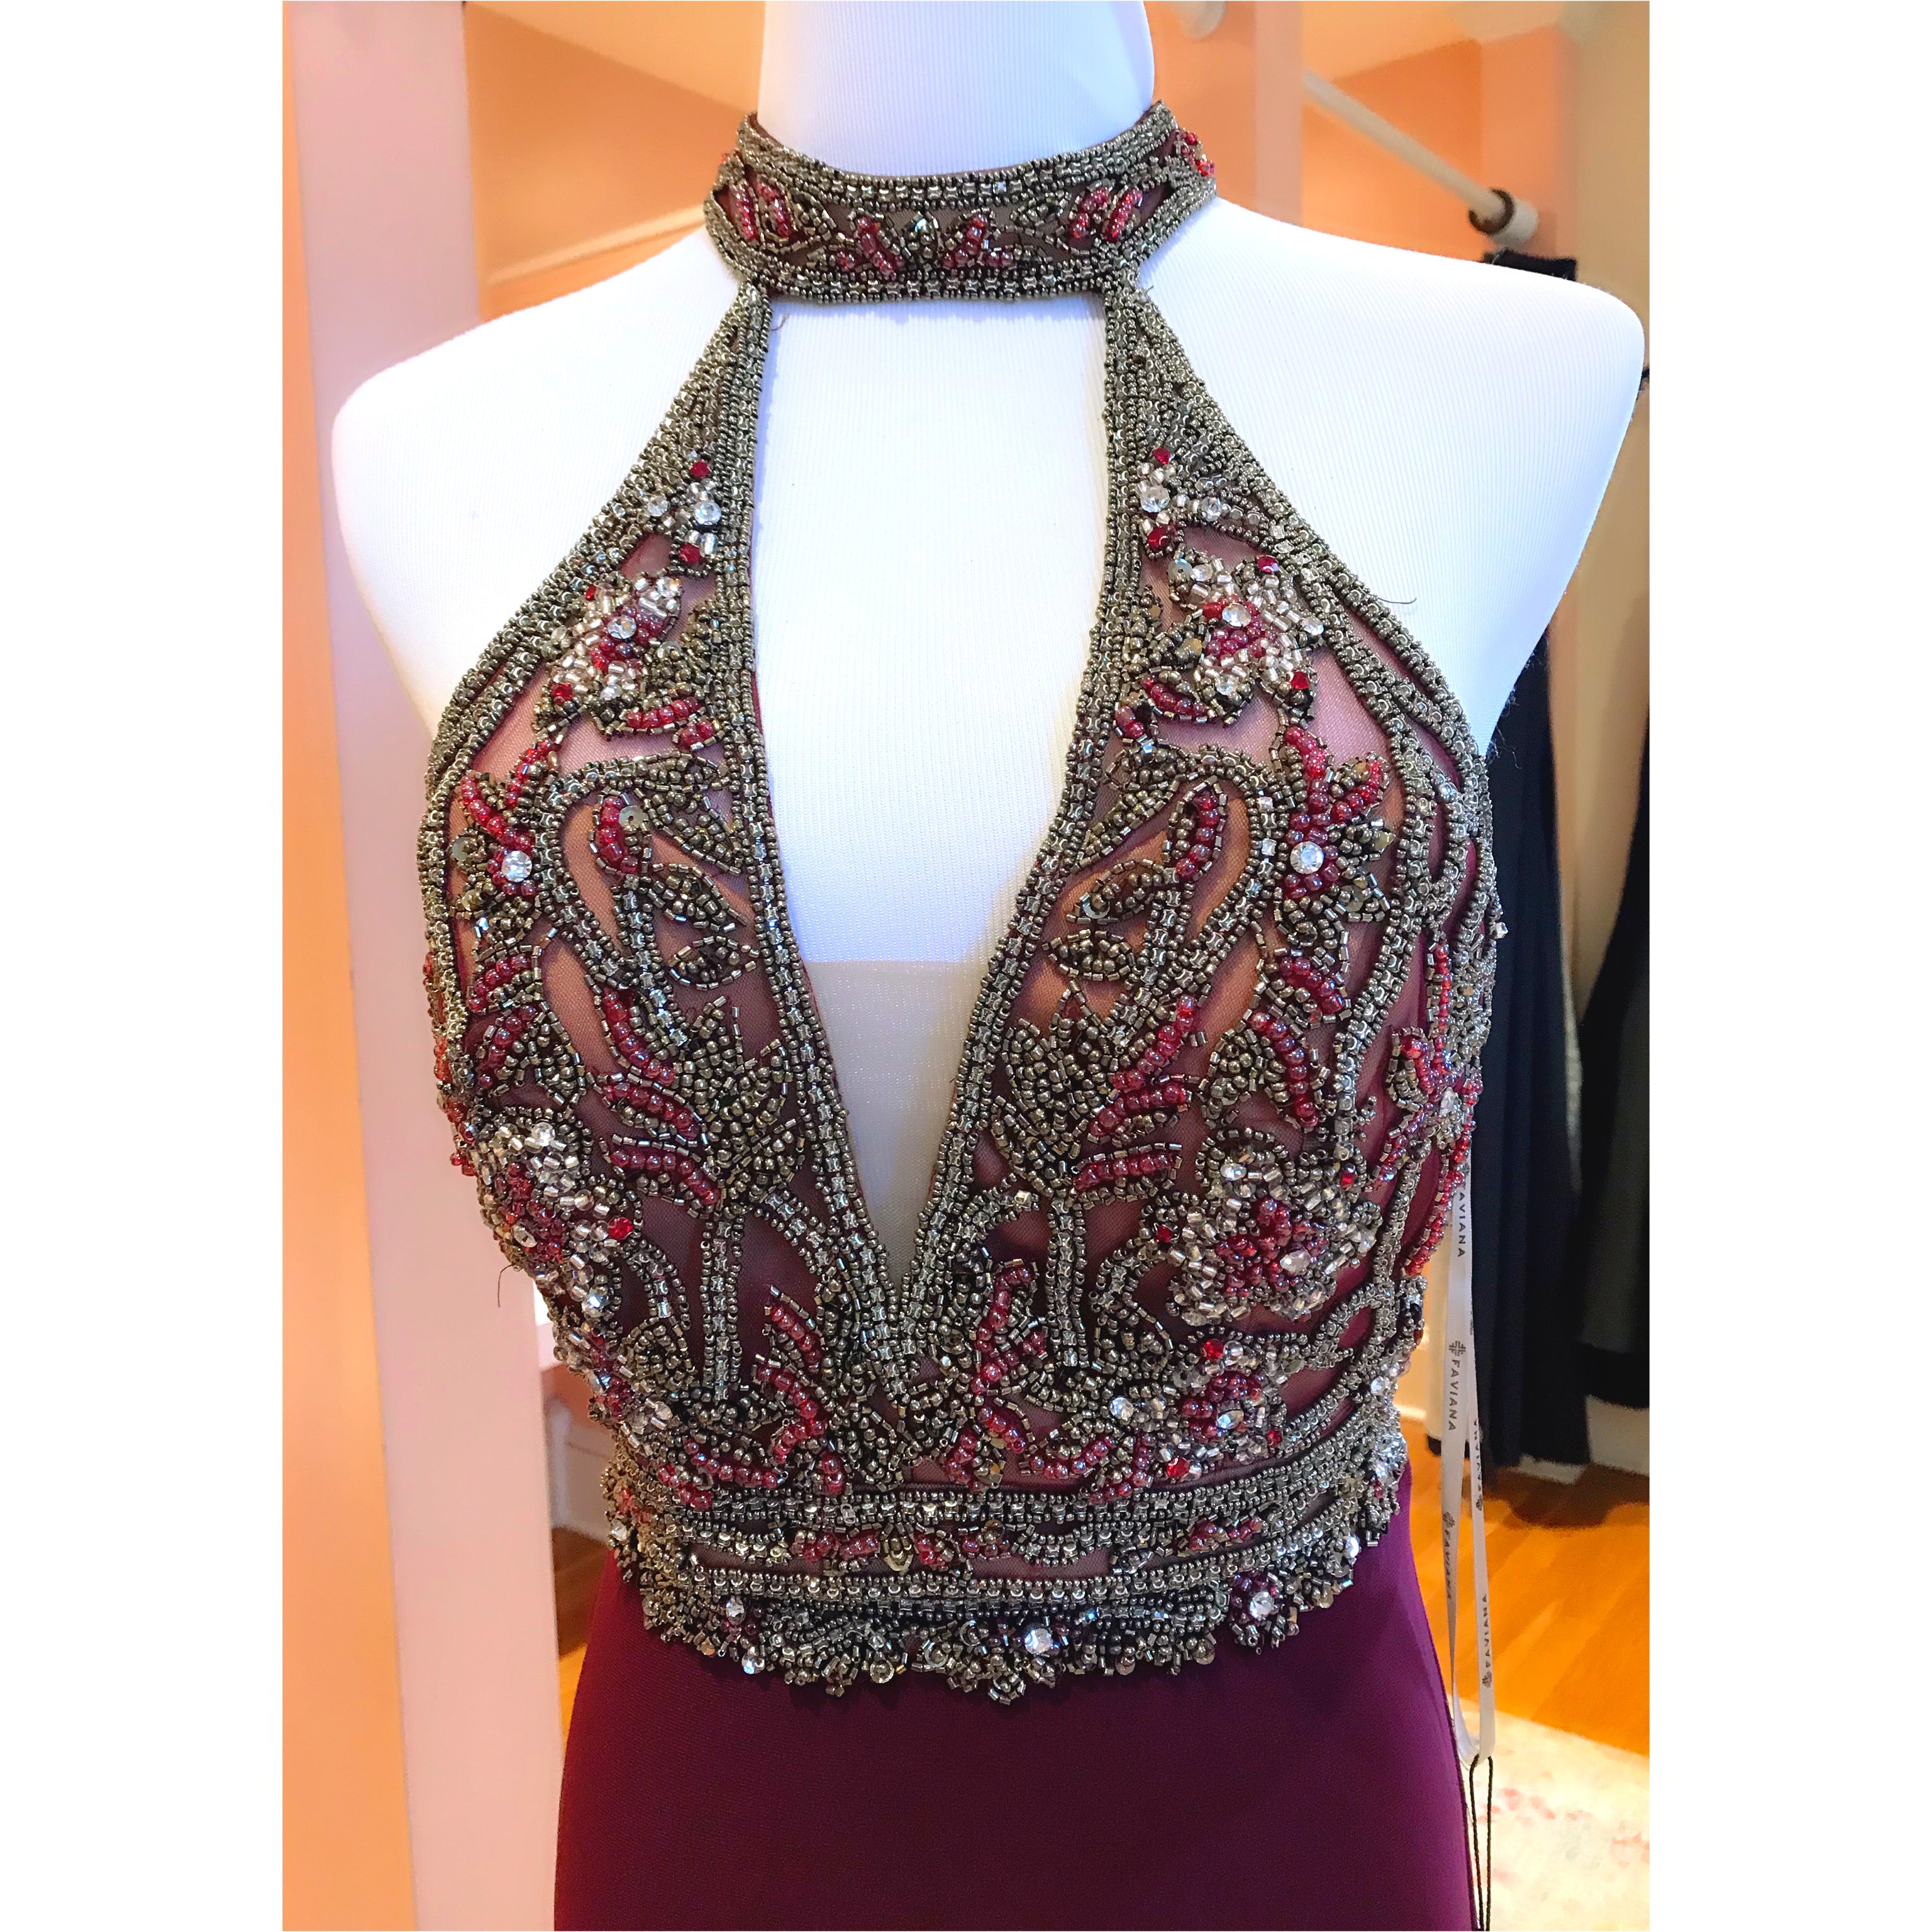 Faviana burgundy 2-piece dress, size 2, NEW WITH TAGS!